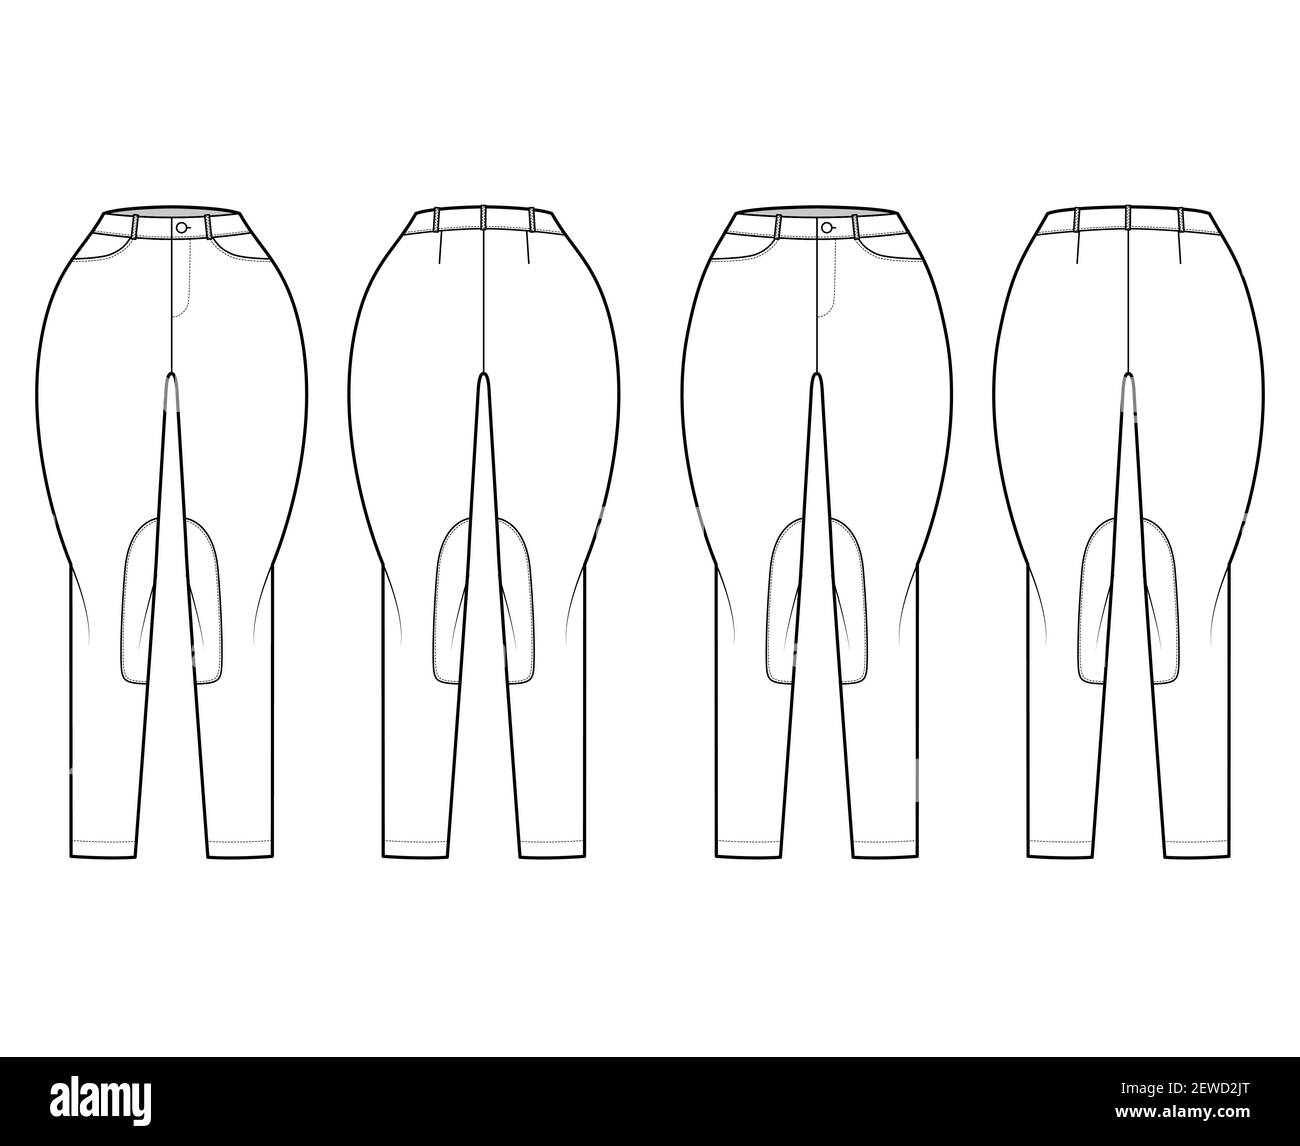 Ensemble de jeans Classic Jodhpurs pantalons denim technique mode illustration avec taille basse normale, taille haute, passants de ceinture, pleine longueur. Modèle plat à l'avant à l'arrière, style blanc. Maquette CAD pour femmes et hommes Illustration de Vecteur